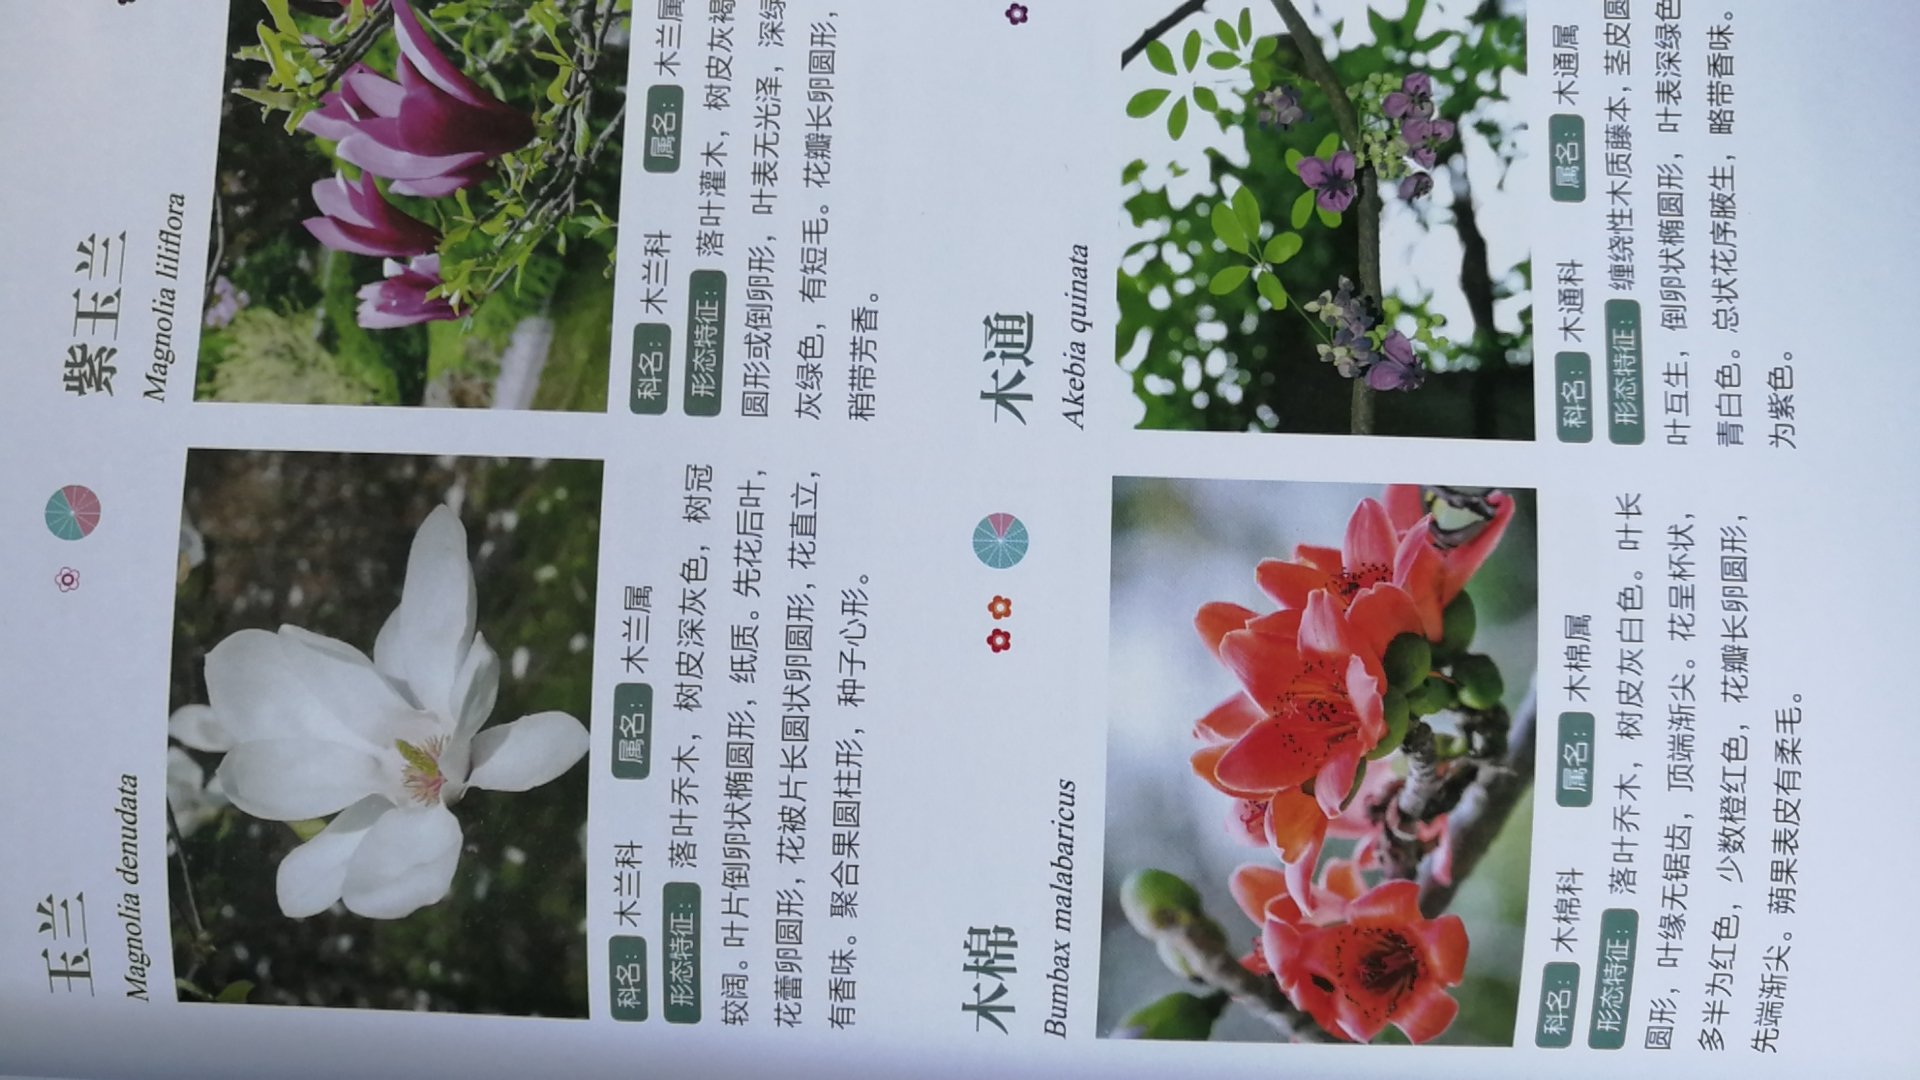 这本书可以让我们认识很多常见花卉，但介绍有点简单，没有别名，有个别没有全景，比如只有花